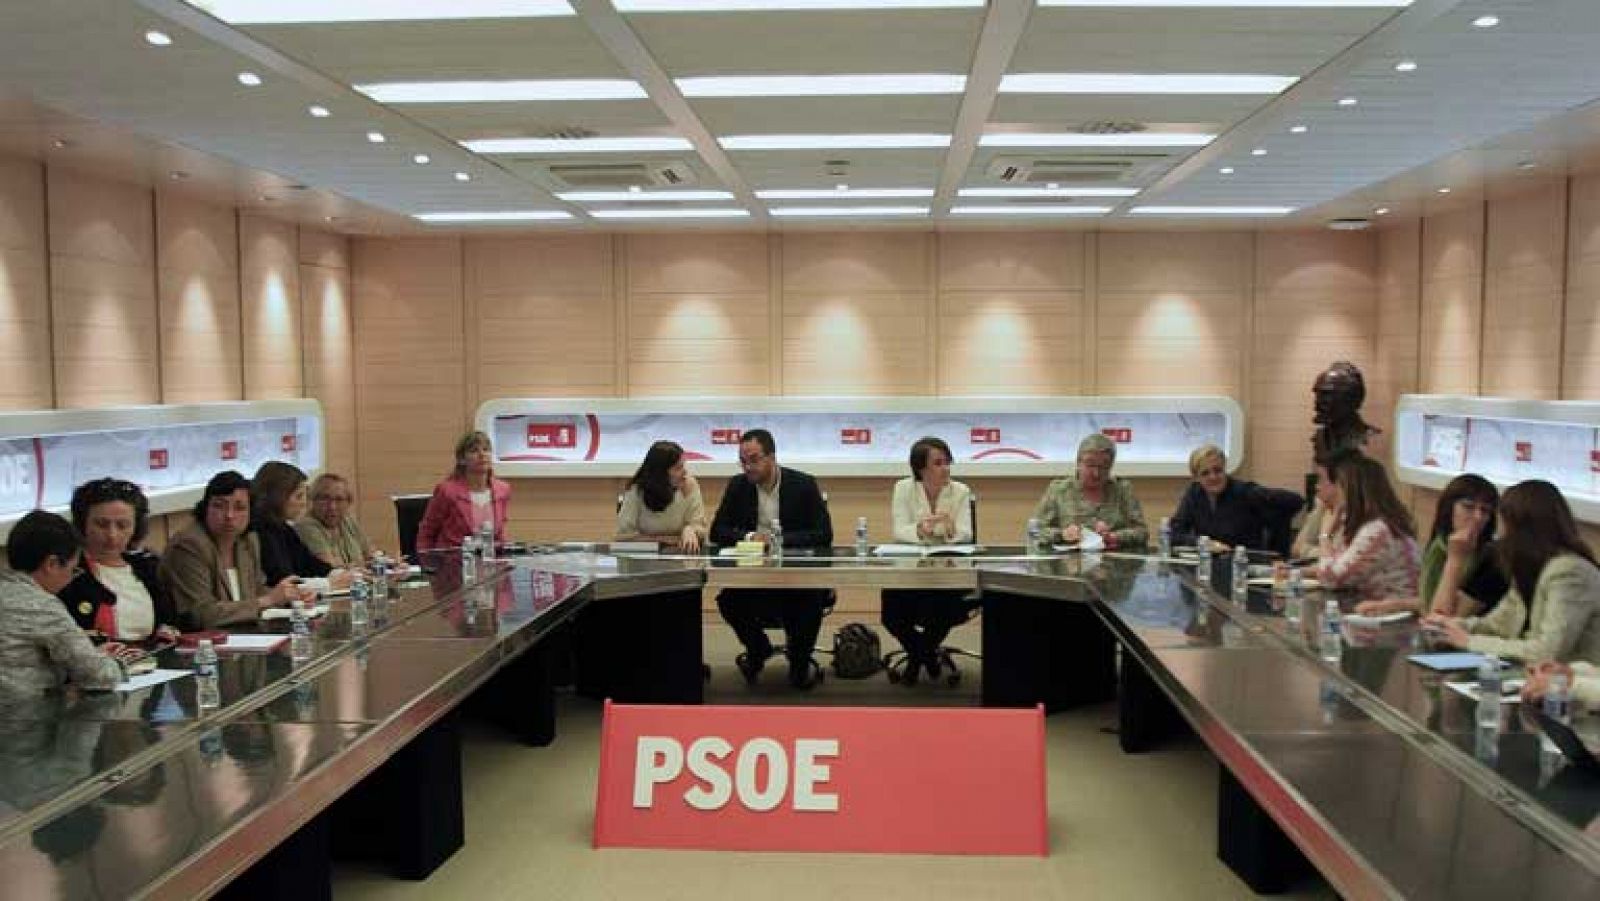 El PSOE pide al gobierno consenso en la lucha contra la violencia de género